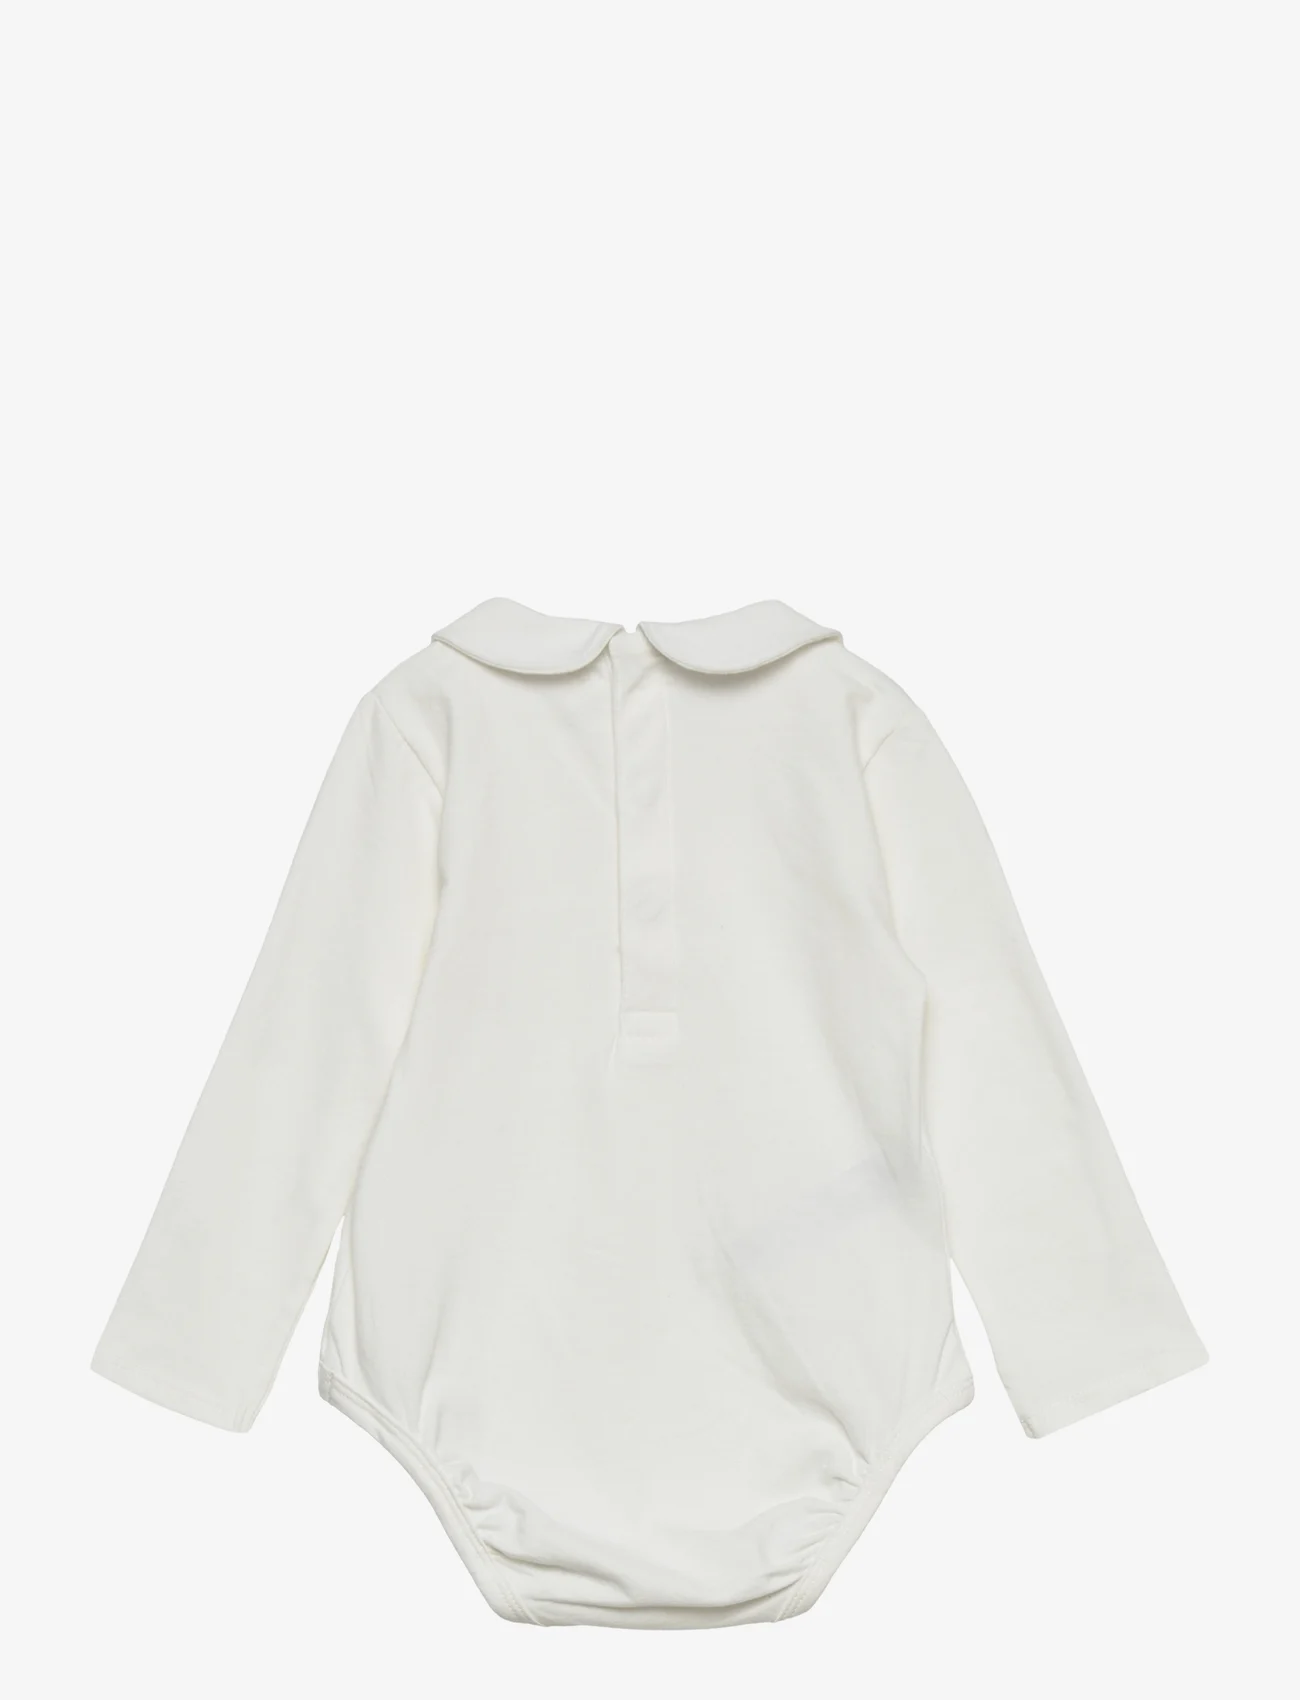 Mango - Cotton bodysuit with classic neck - kesälöytöjä - natural white - 1